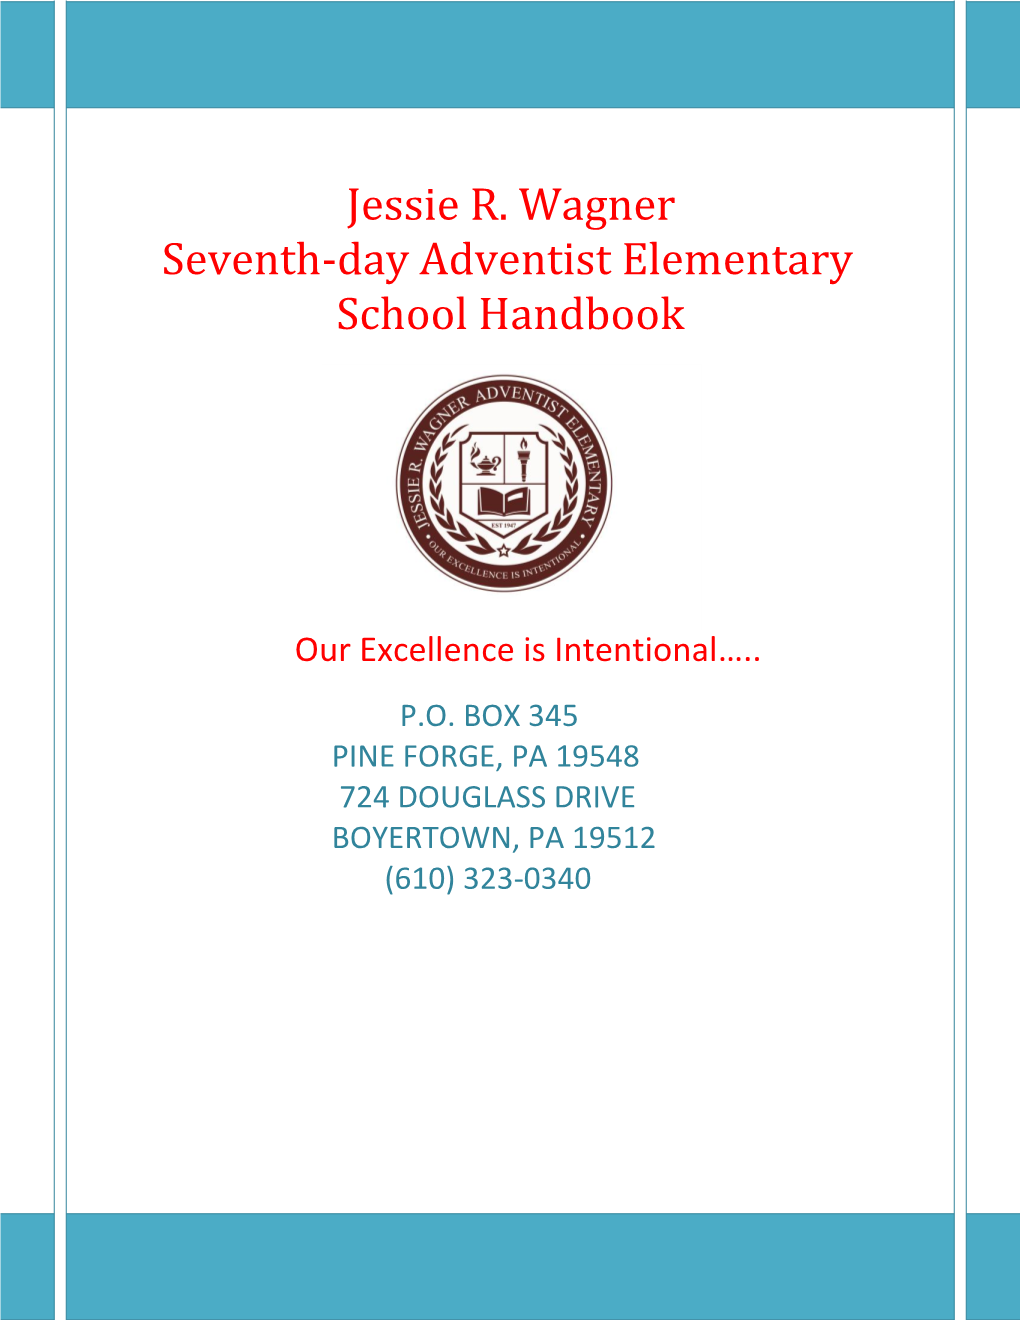 Jessie R. Wagner Seventh-Day Adventist Elementary School Handbook